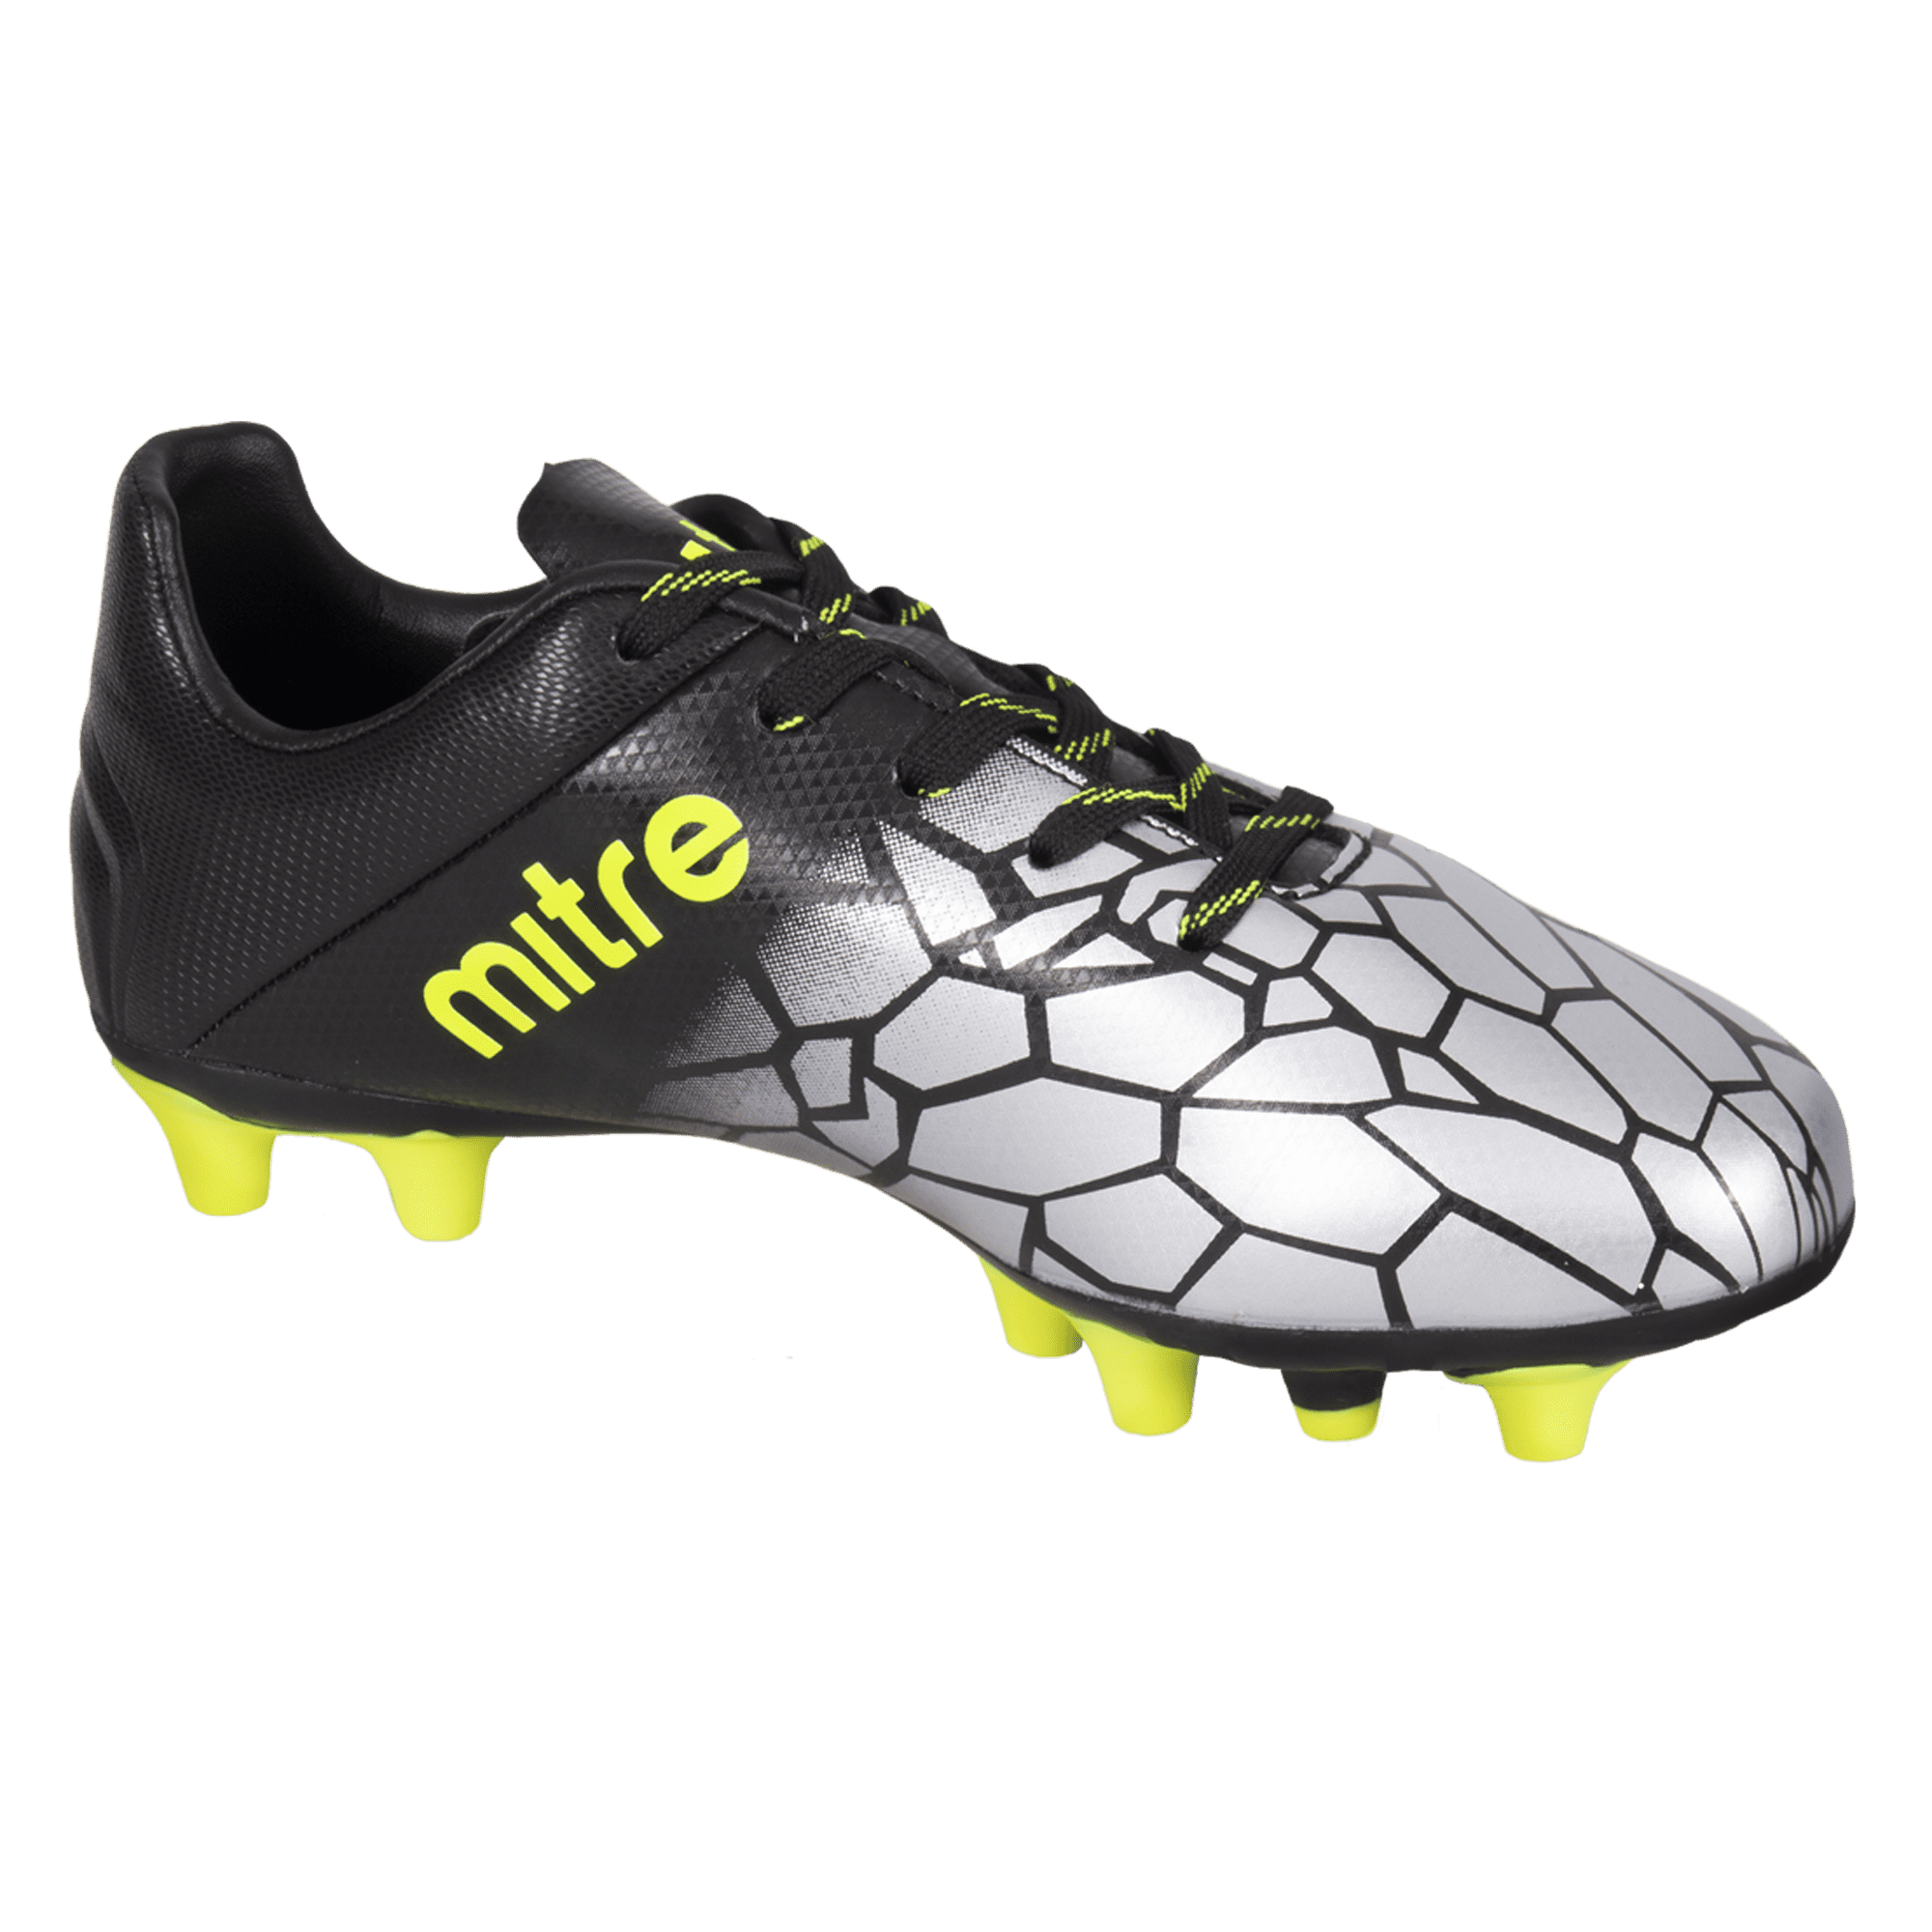 mitre soccer shoes